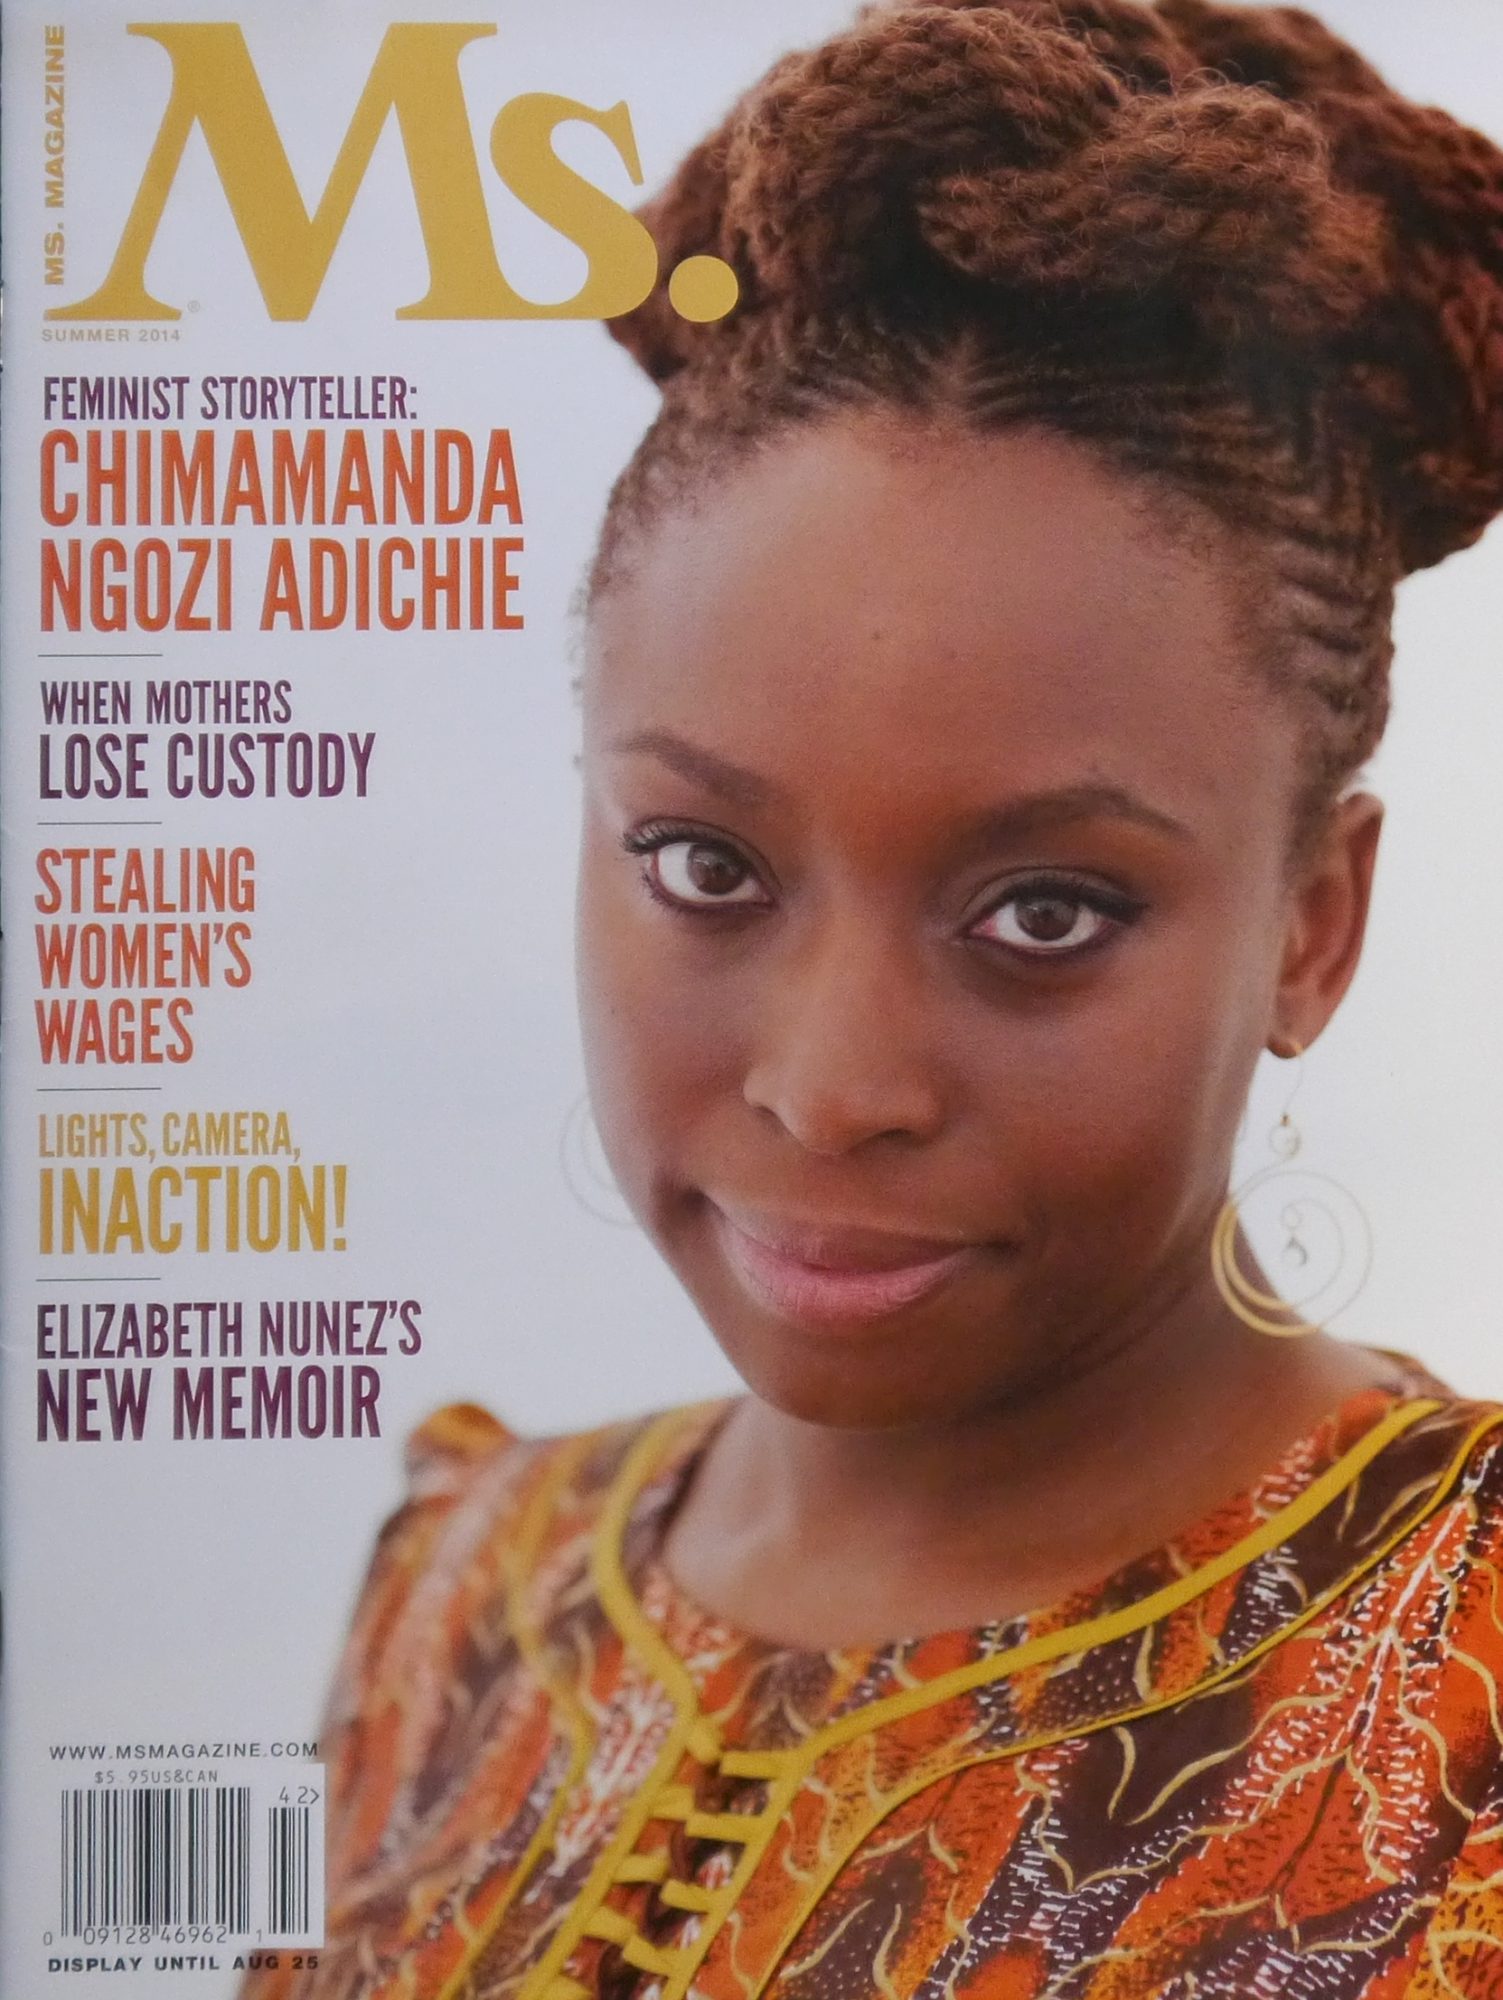 El feminismo explicado por Chimamanda Adichie